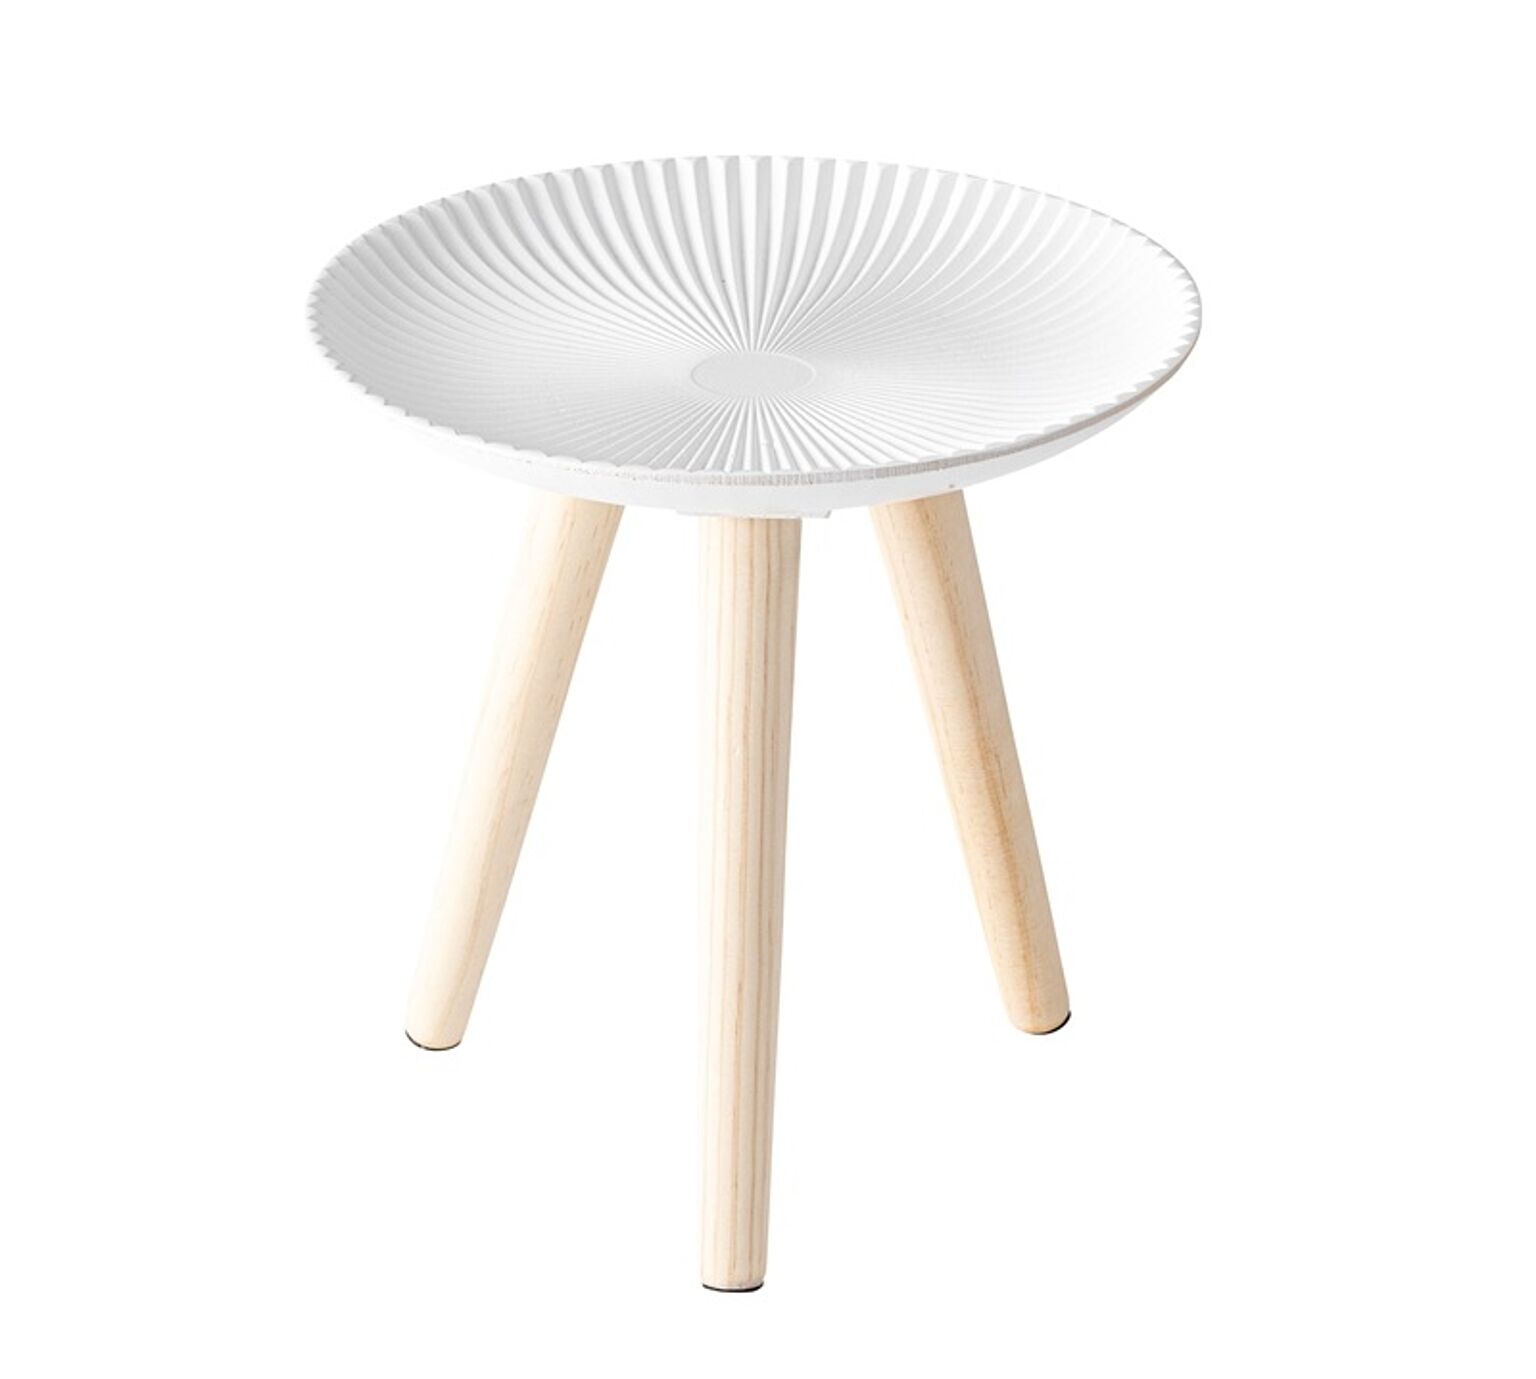 トレーテーブルS φ29.5×H29.5 ホワイト トレーテーブル サイドテーブル トレー 取り外し 小物置き円形 丸形 軽量 おしゃれ かわいい シンプル ナチュラル 脚付き ソファサイド 